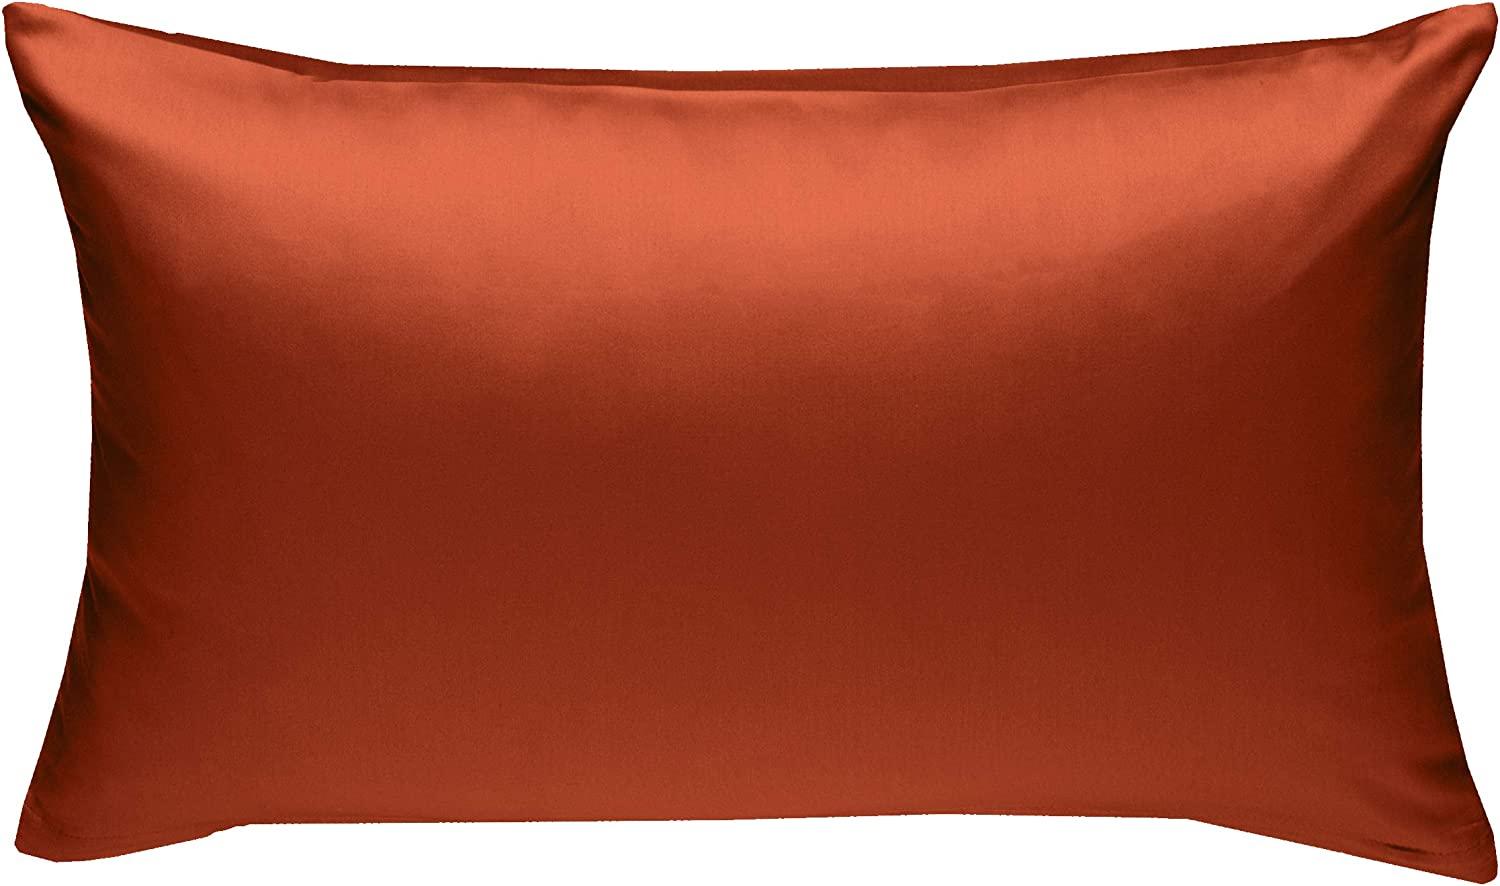 Bettwaesche-mit-Stil Mako-Satin / Baumwollsatin Bettwäsche uni / einfarbig orange Kissenbezug 40x60 cm Bild 1